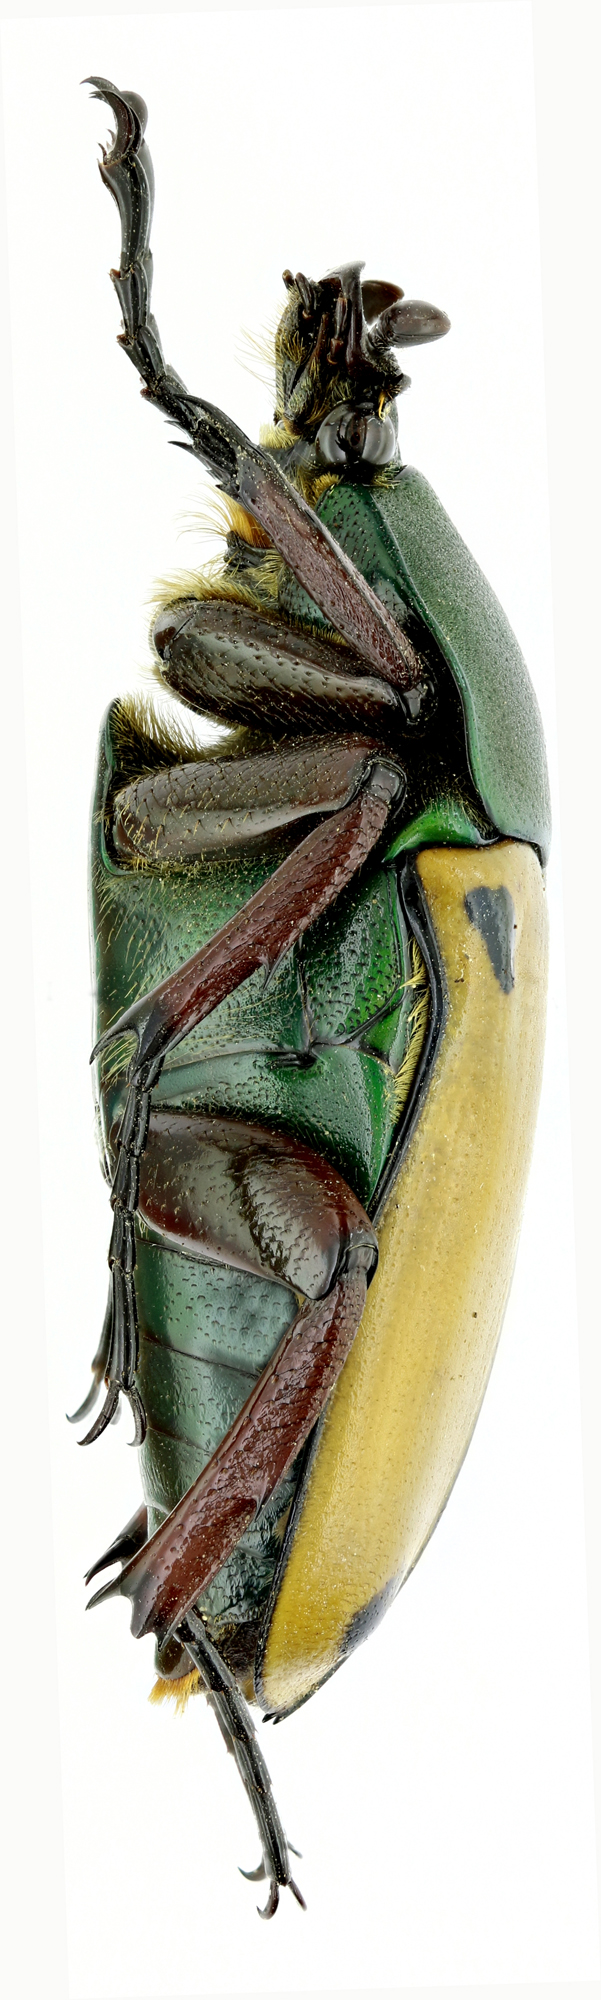 Eudicella euthalia oweni 18373zs83.jpg